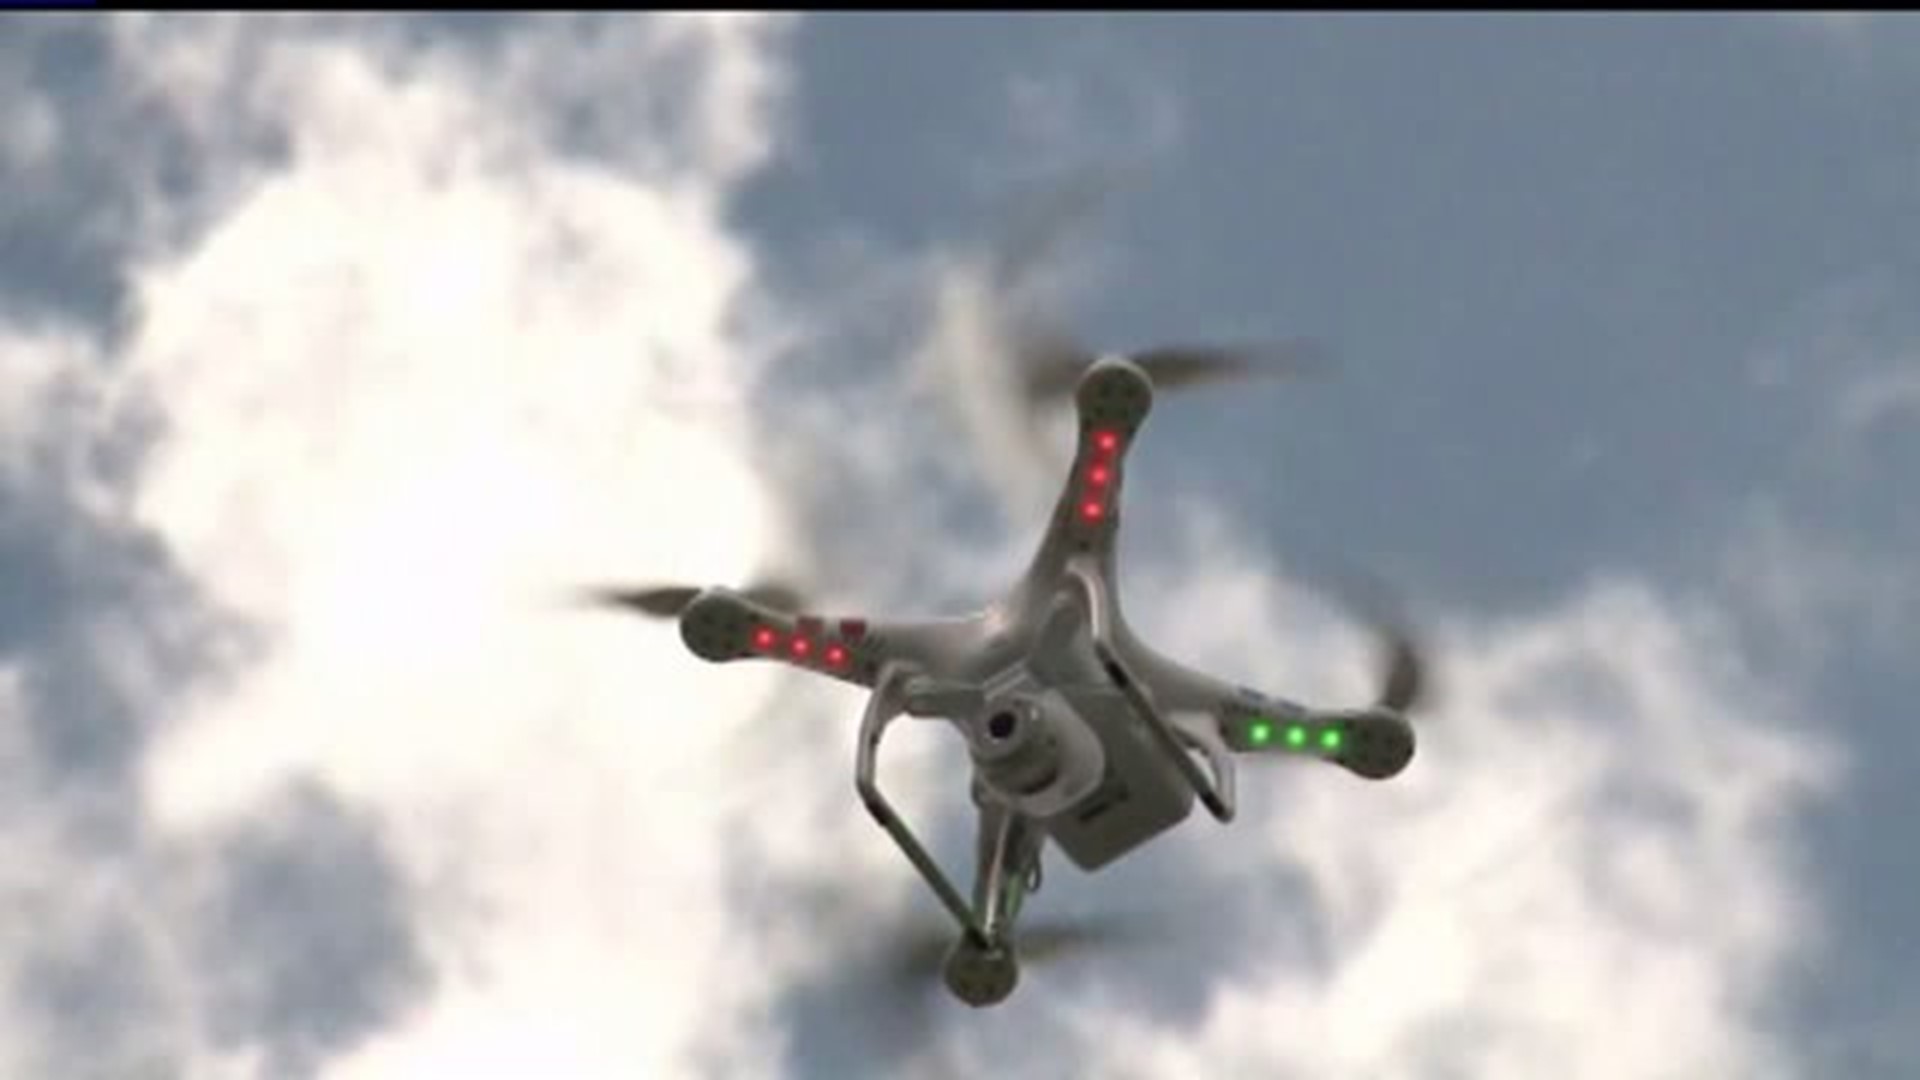 Senator proposes drone moratorium in Pennsylvania